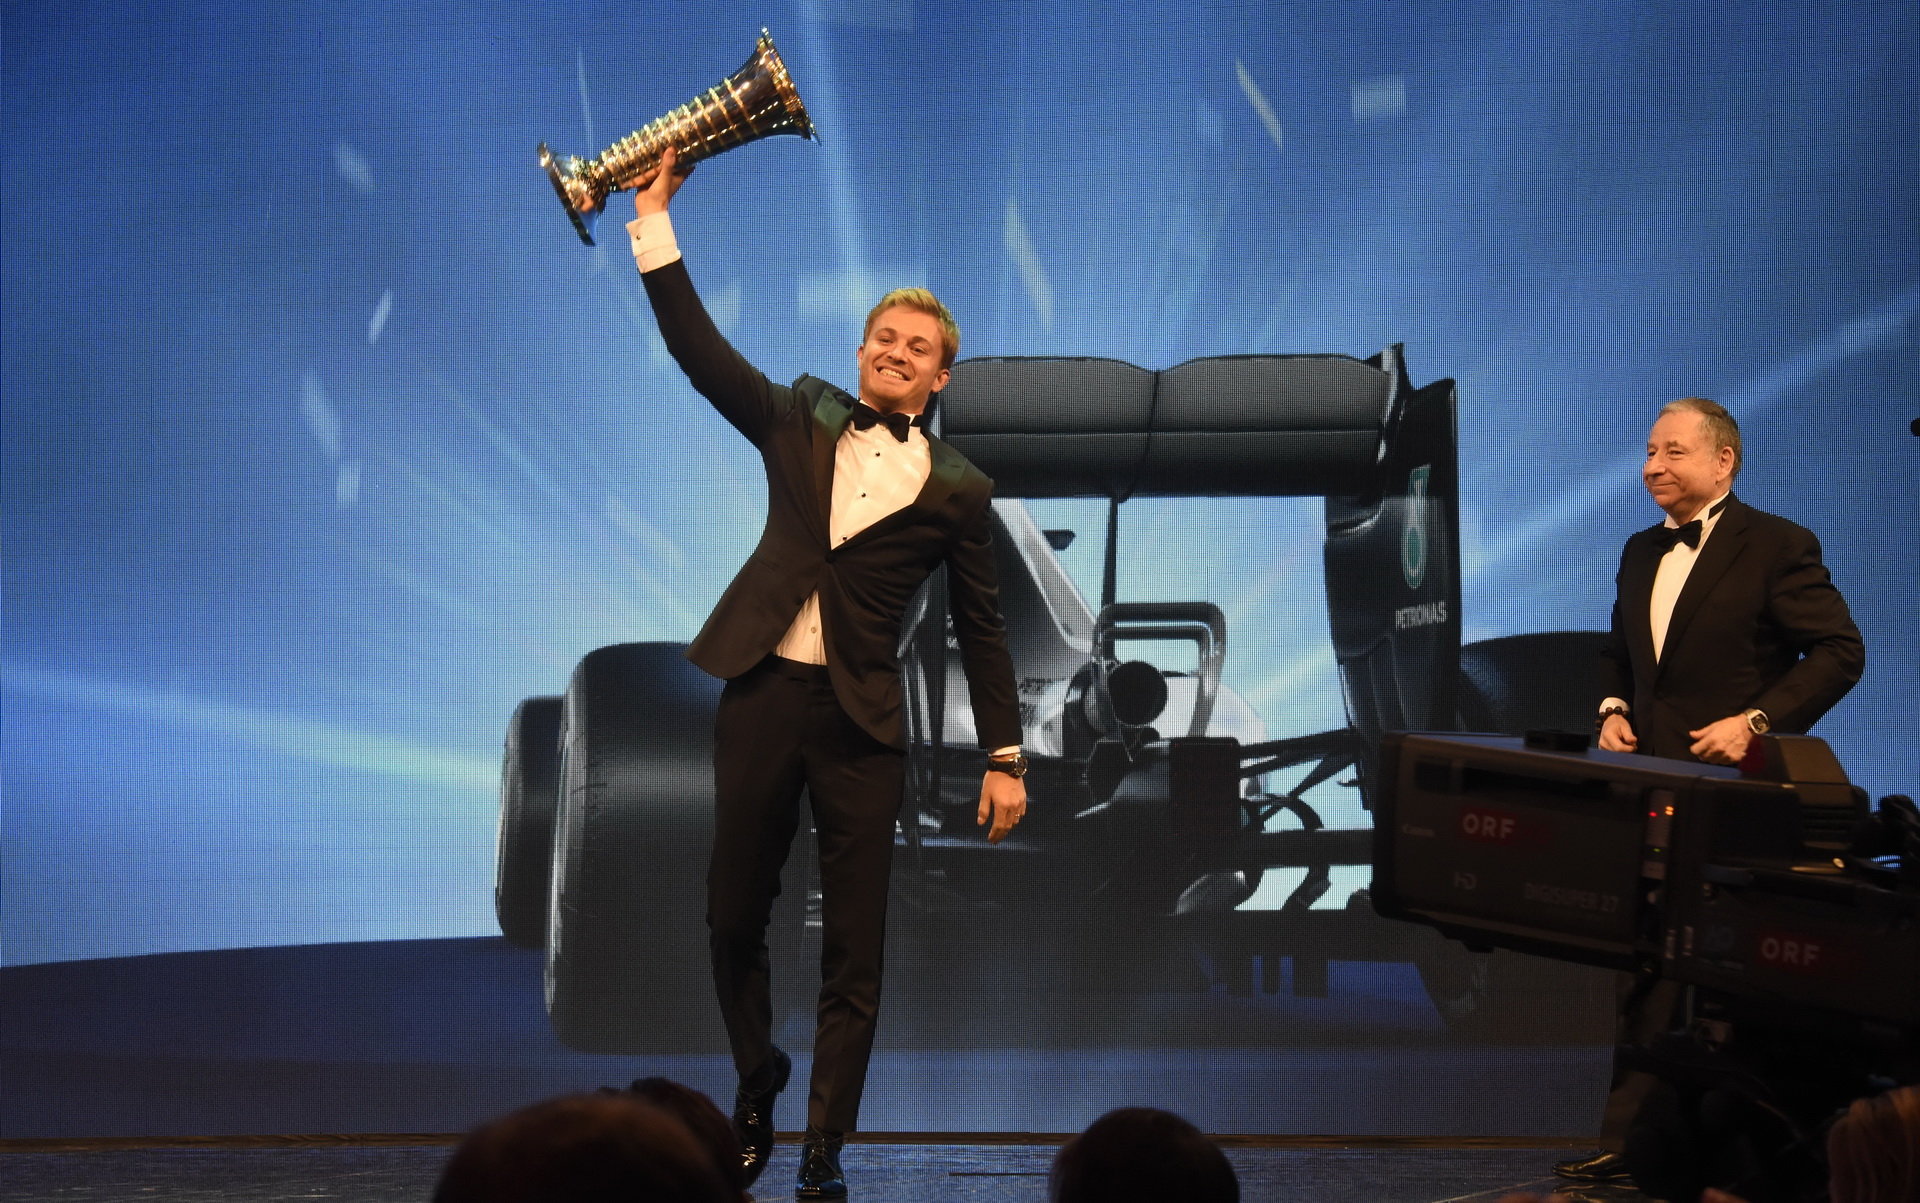 Nico Rosberg se raduje se svou mistrovskou trofejí, v pozadí Jean Todt